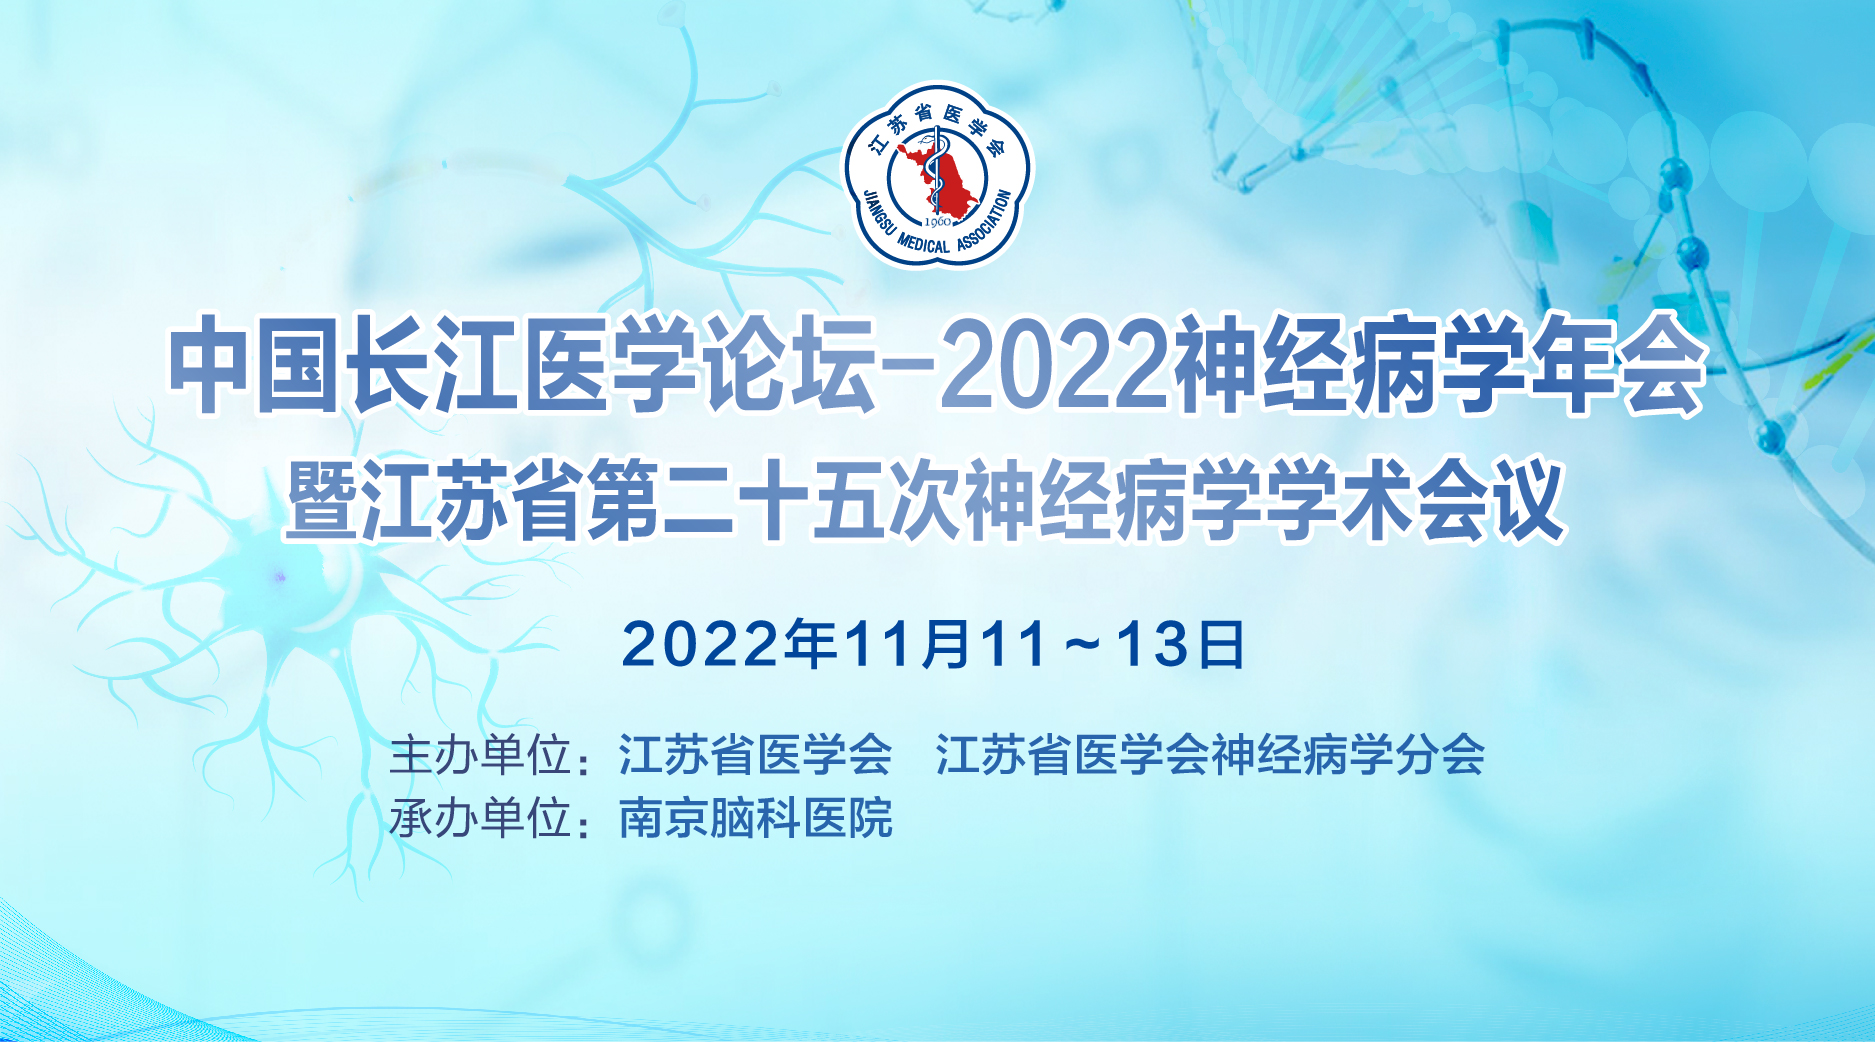 中国长江医学论坛-2022神经病学年会暨江苏省第二十五次神经病学学术会议